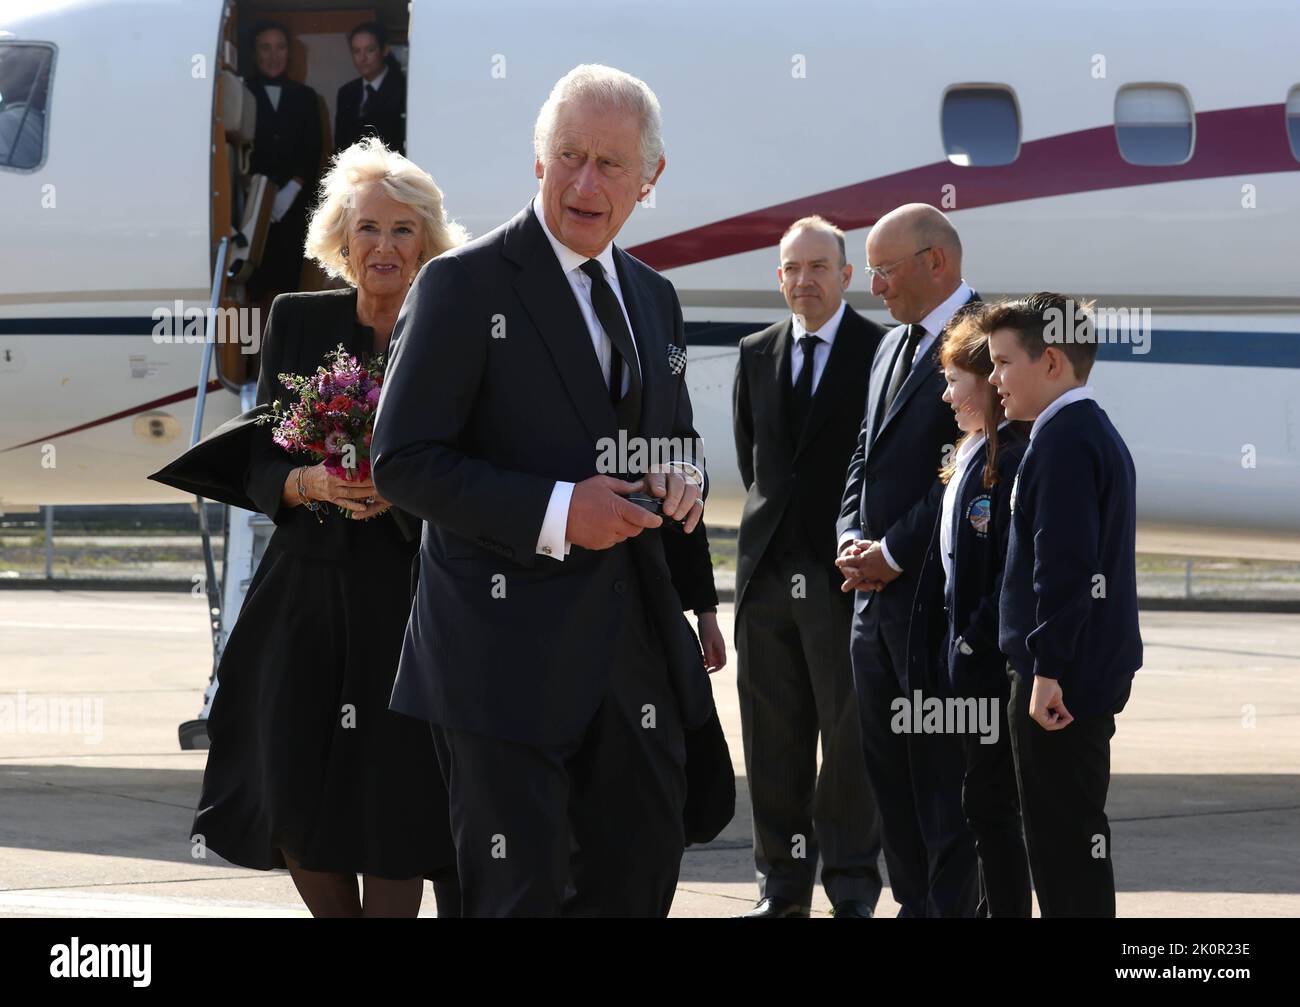 Le roi Charles III et la reine Consort arrivent à l'aéroport de Belfast, alors que le roi poursuit sa visite des quatre nations d'origine en Irlande du Nord. Date de la photo: Mardi 13 septembre 2022. Banque D'Images